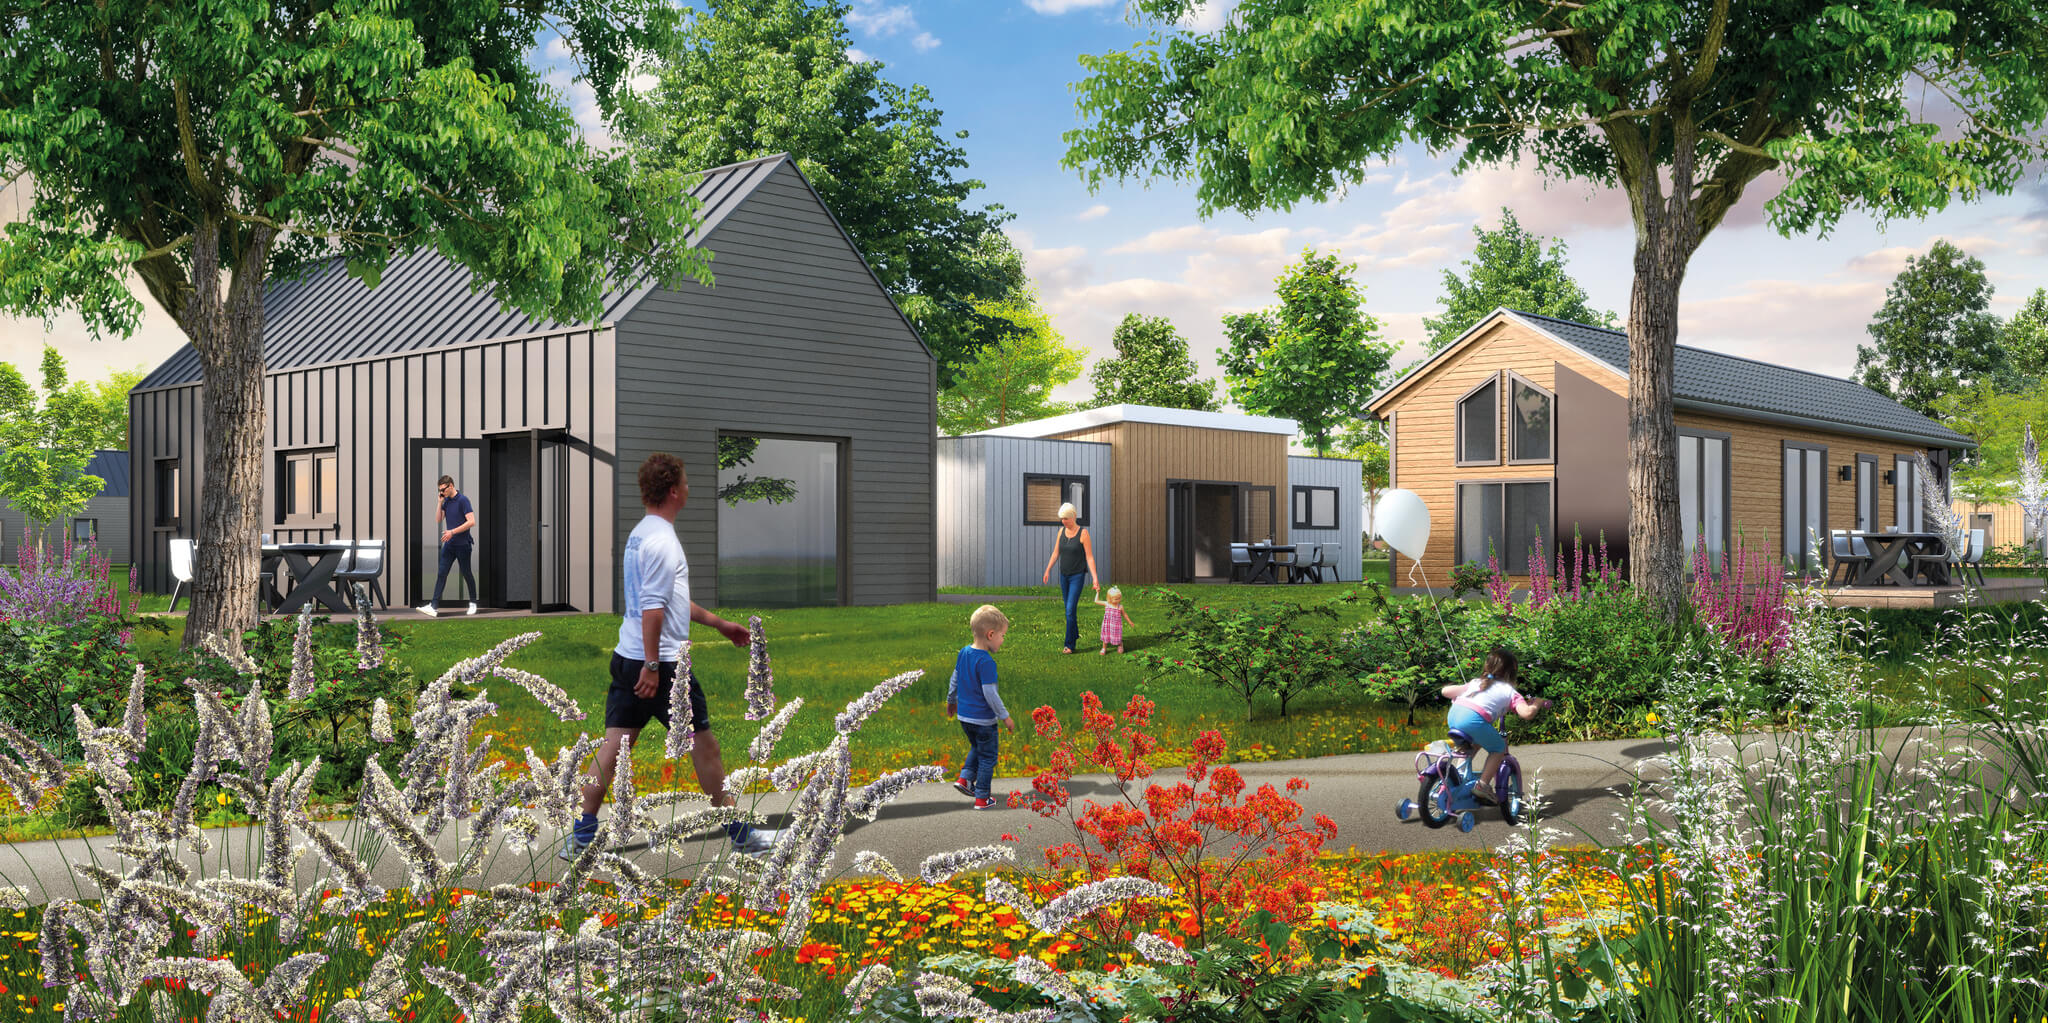 Nieuwbouwproject Recreatiepark Hellendoorn - recreatiechalets op eigen grond